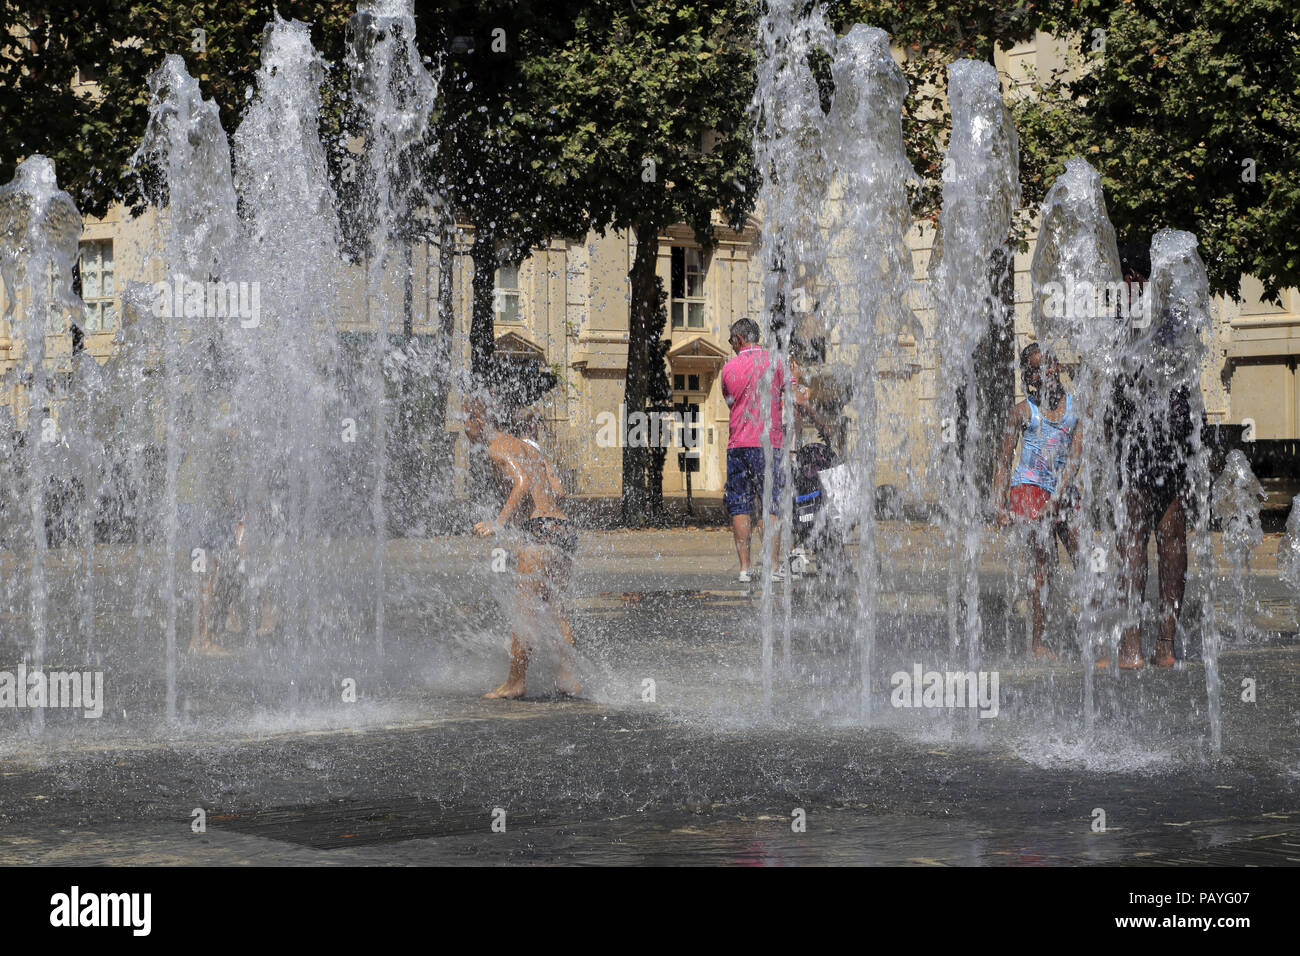 Rafraîchissement dans le Zeus Fontaine, sur la place du nombre d'Or, quartier Antigone. Occitanie Montpellier France. Banque D'Images